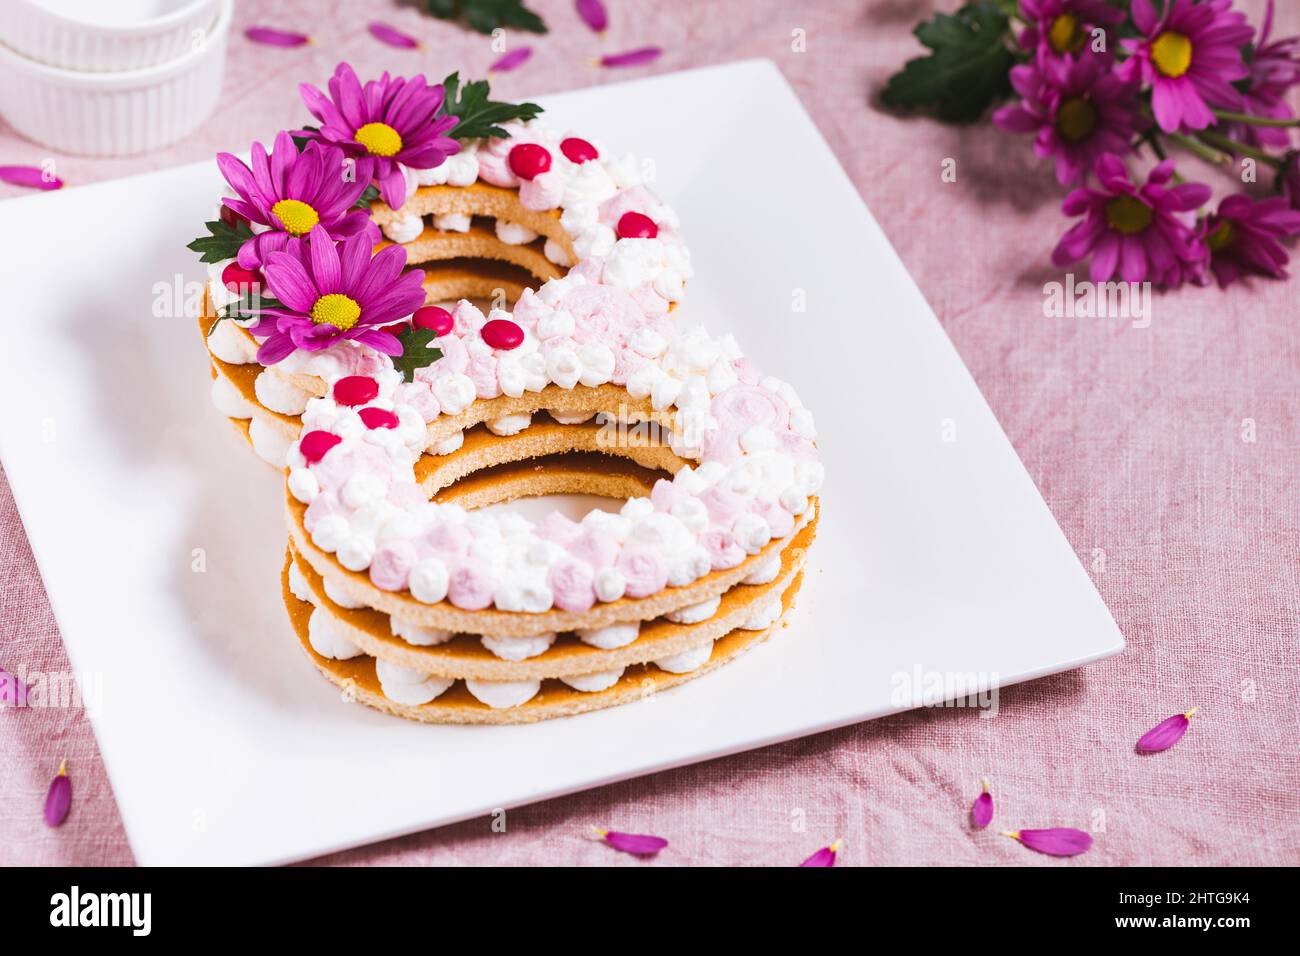 Gâteau de jour pour femmes en forme de huit sur fond rose. Concept du 8 mars. Journée internationale de la femme Banque D'Images